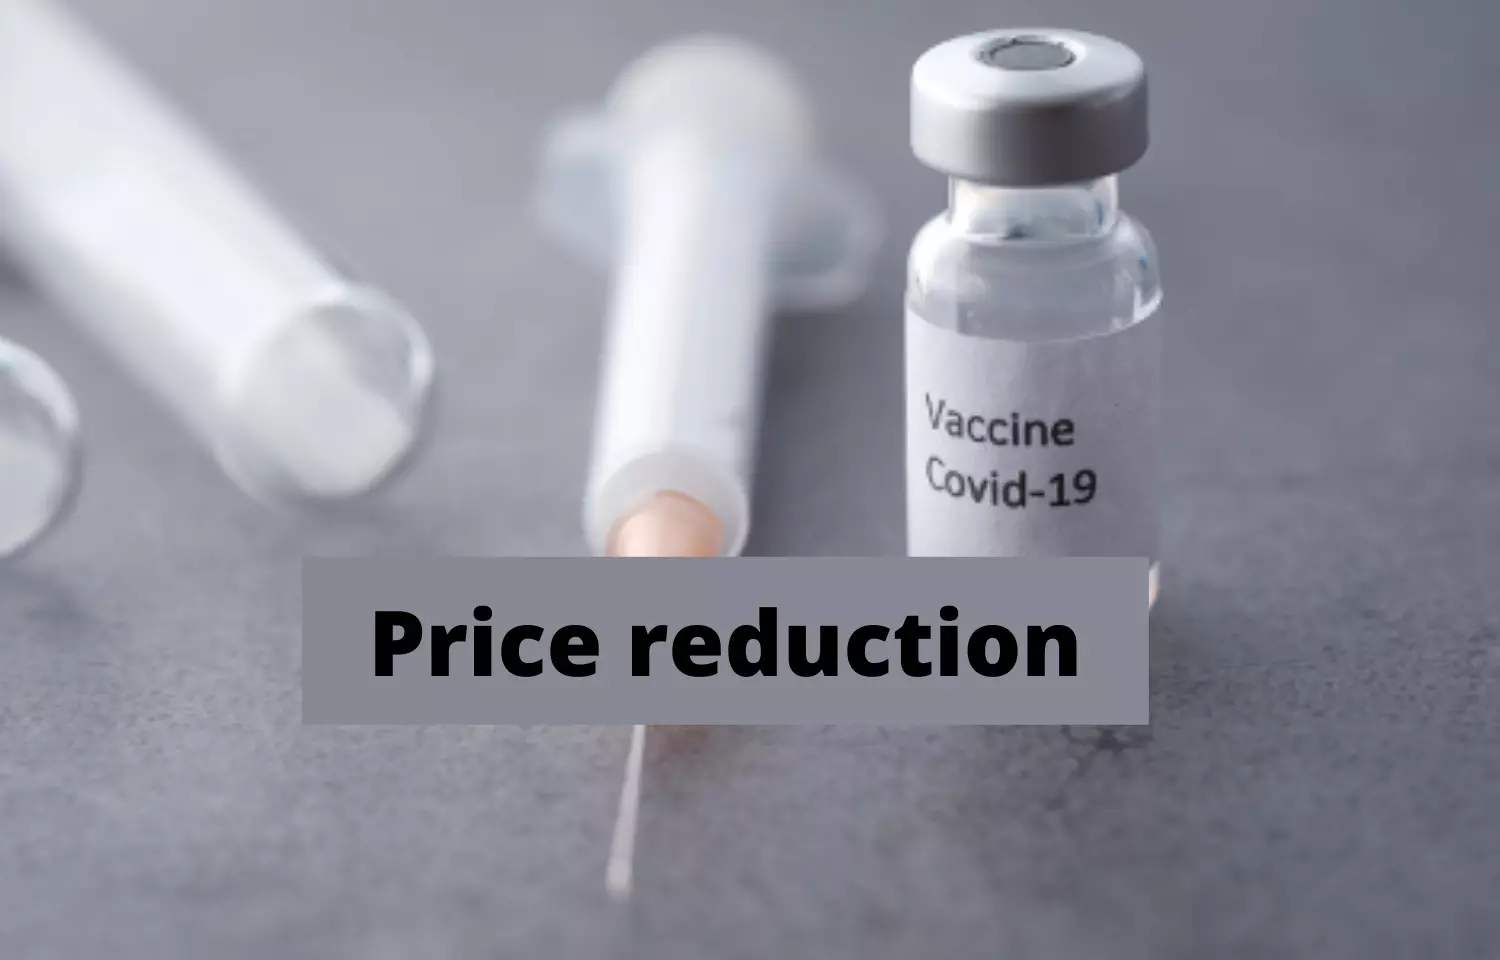 Serum Institute Covovax price cut to Rs 225 per dose